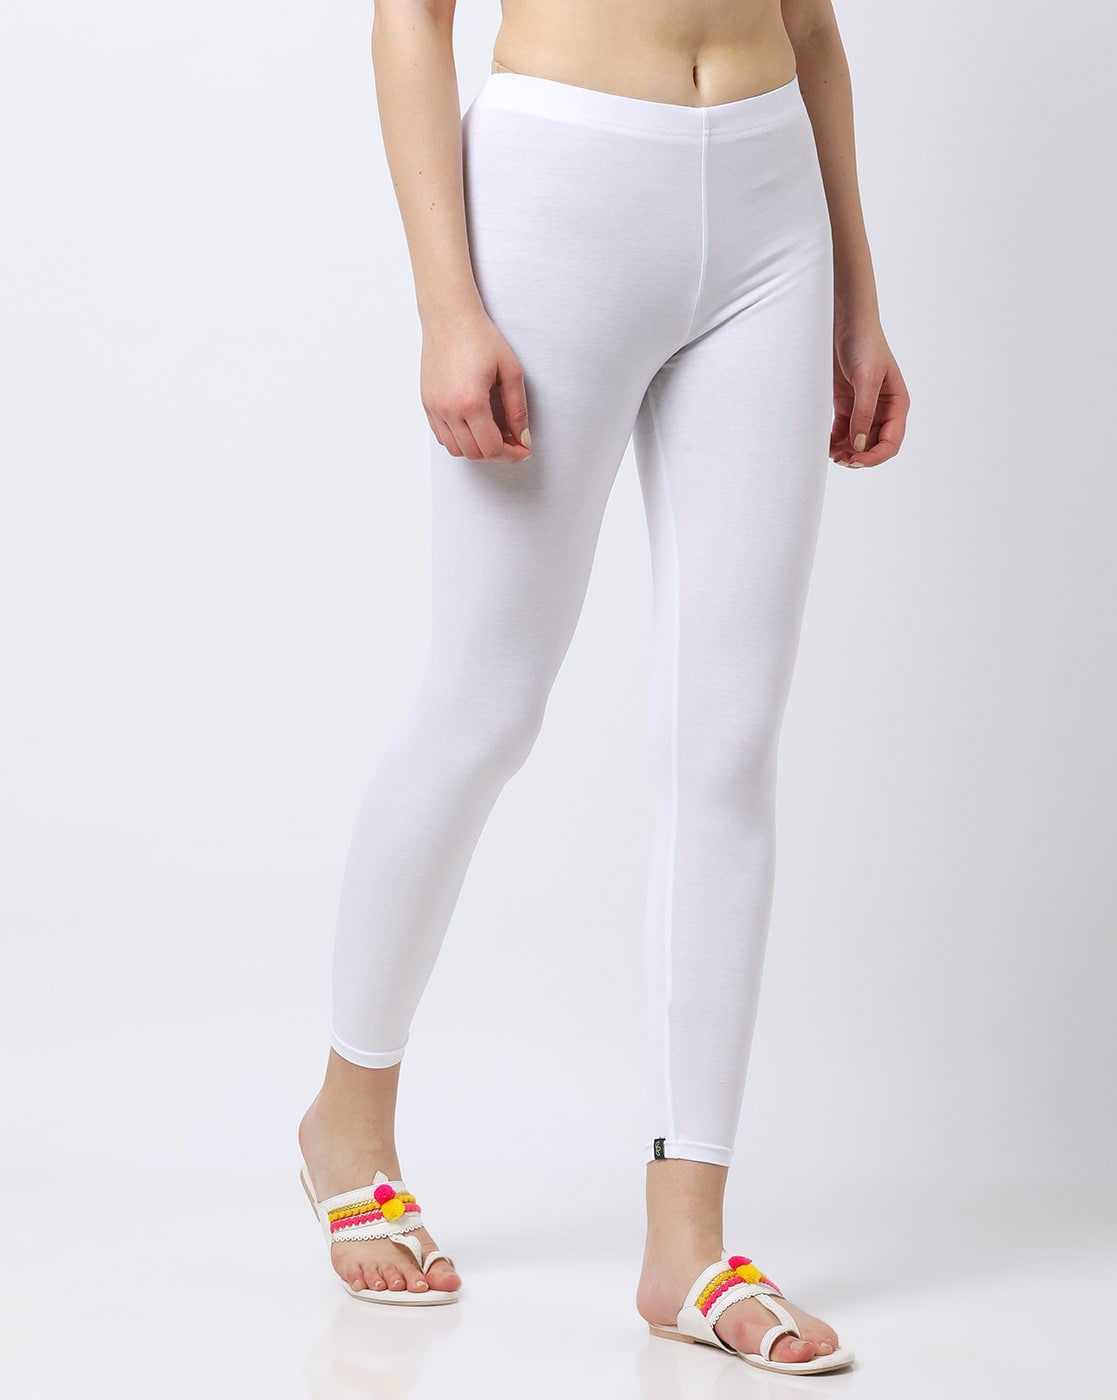 Buy White Leggings for Women by Kryptic Online | Ajio.com-nextbuild.com.vn